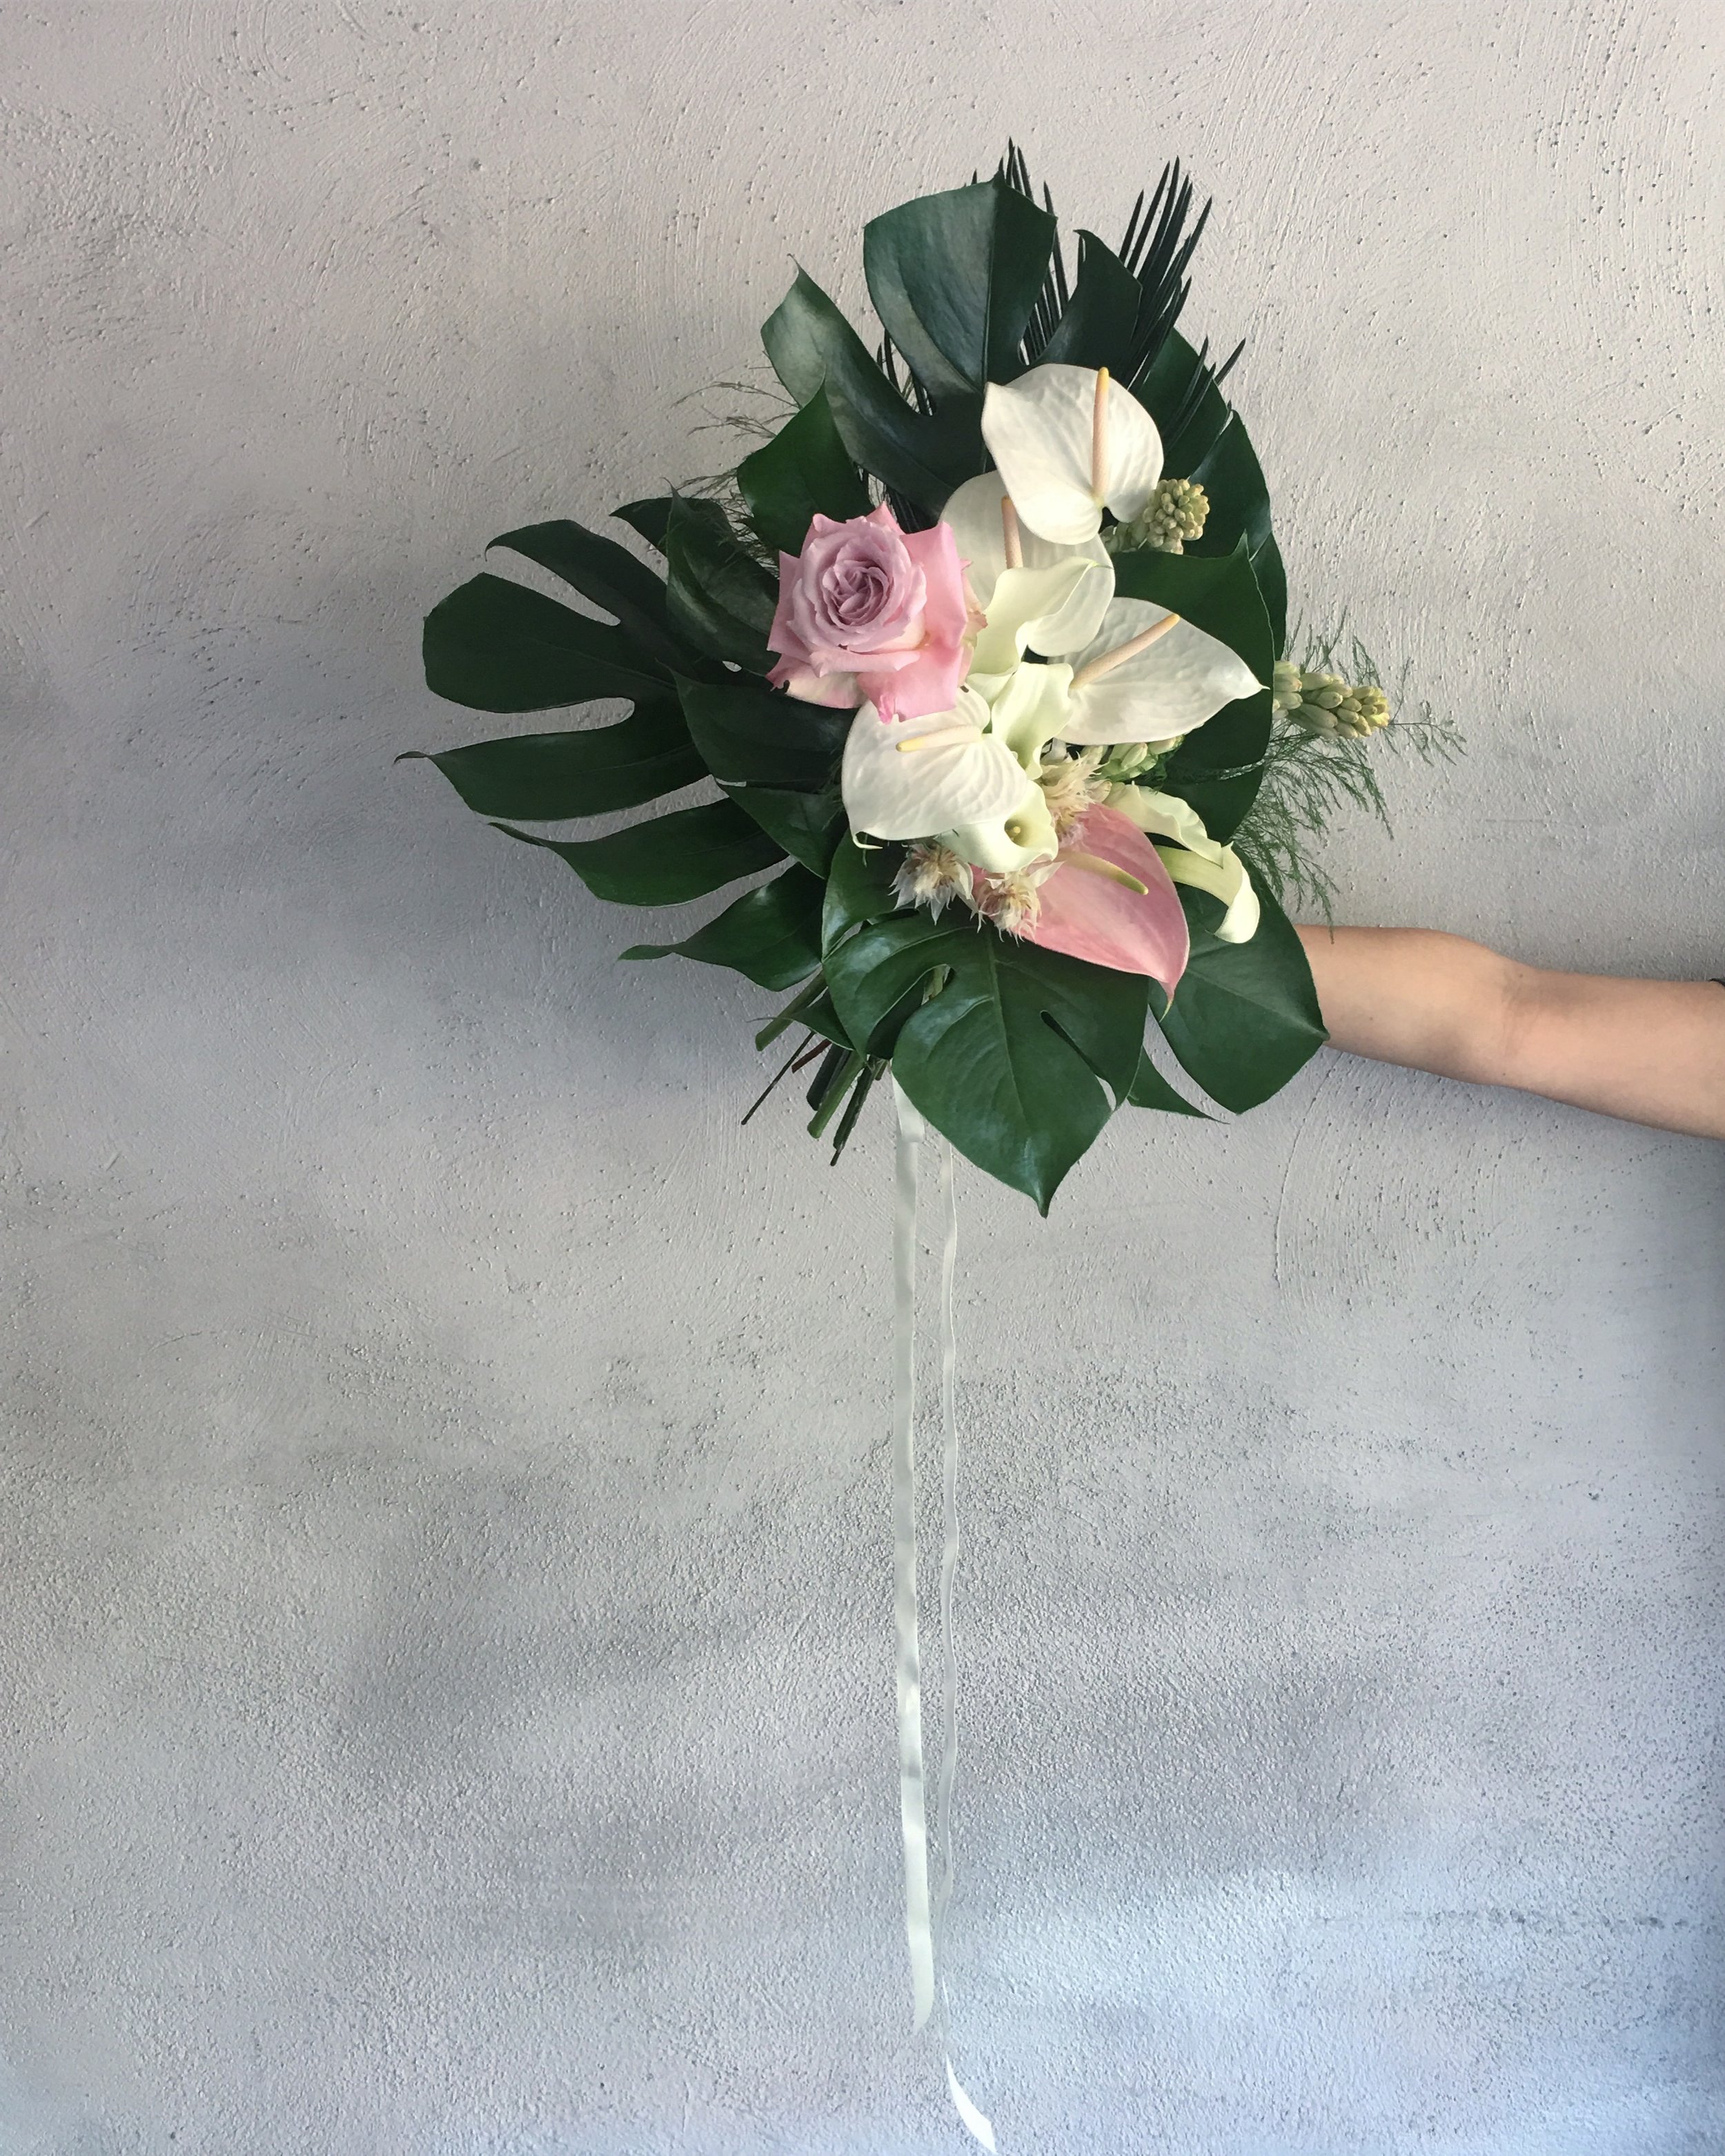  Adriana’s bouquet 